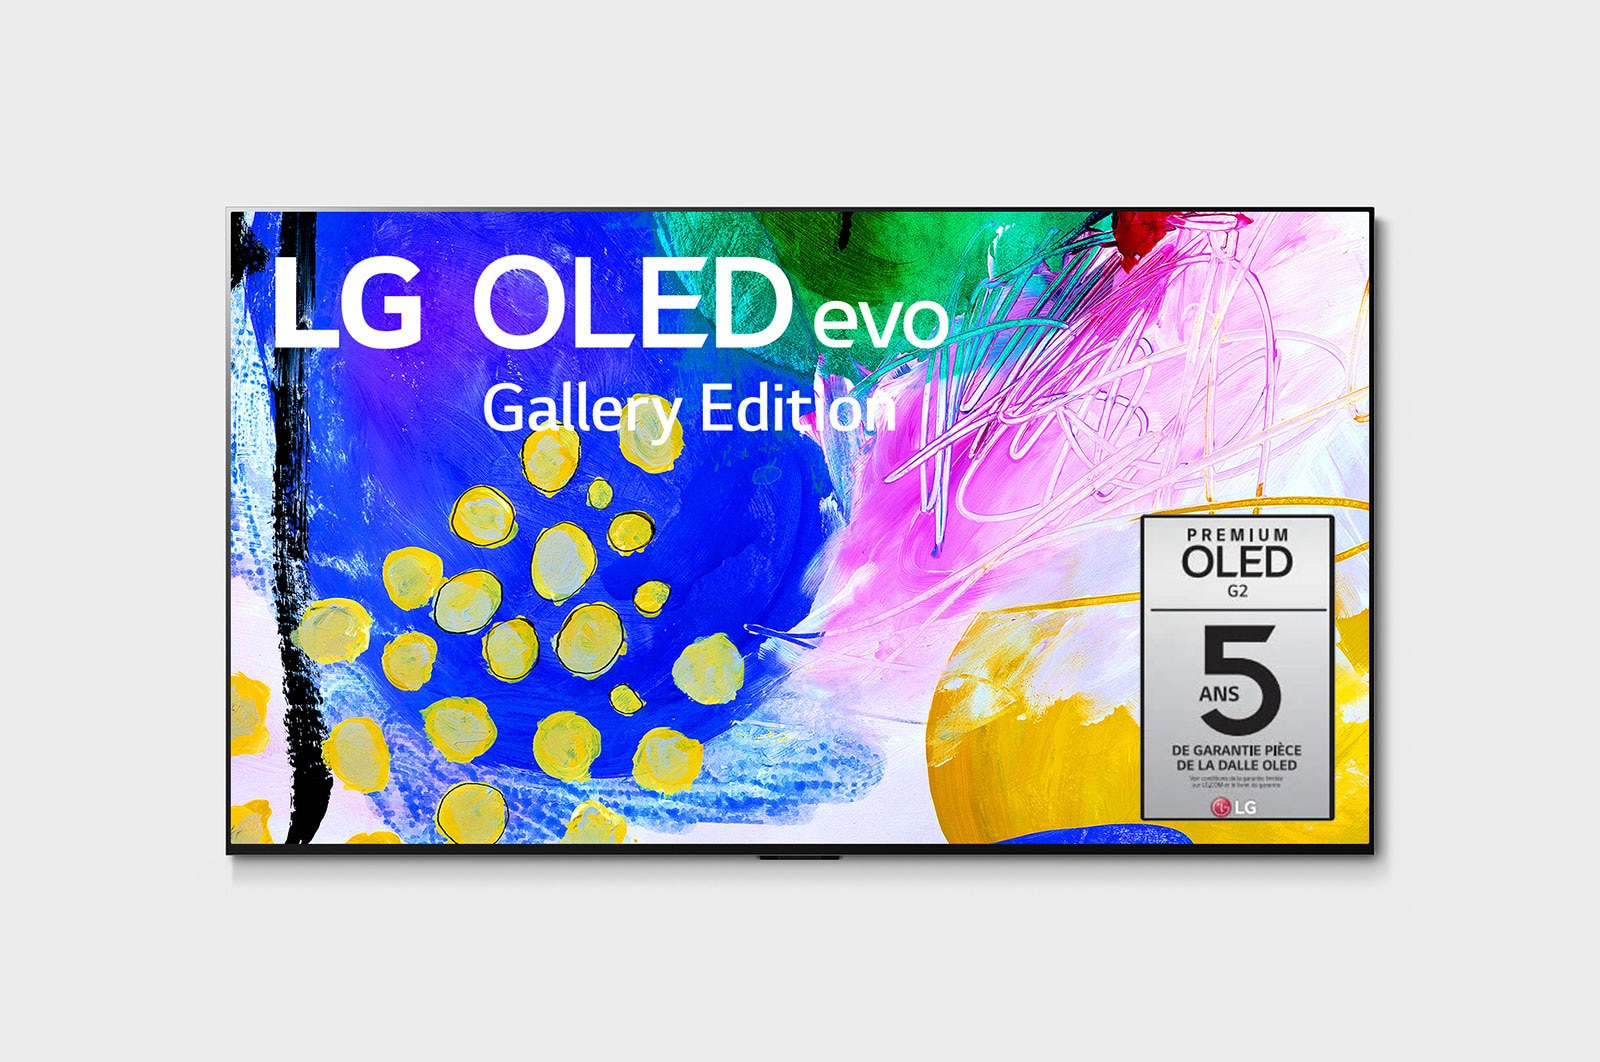 LG G2 evo Édition Gallery 83 pouces de LG, OLED83G2PUA